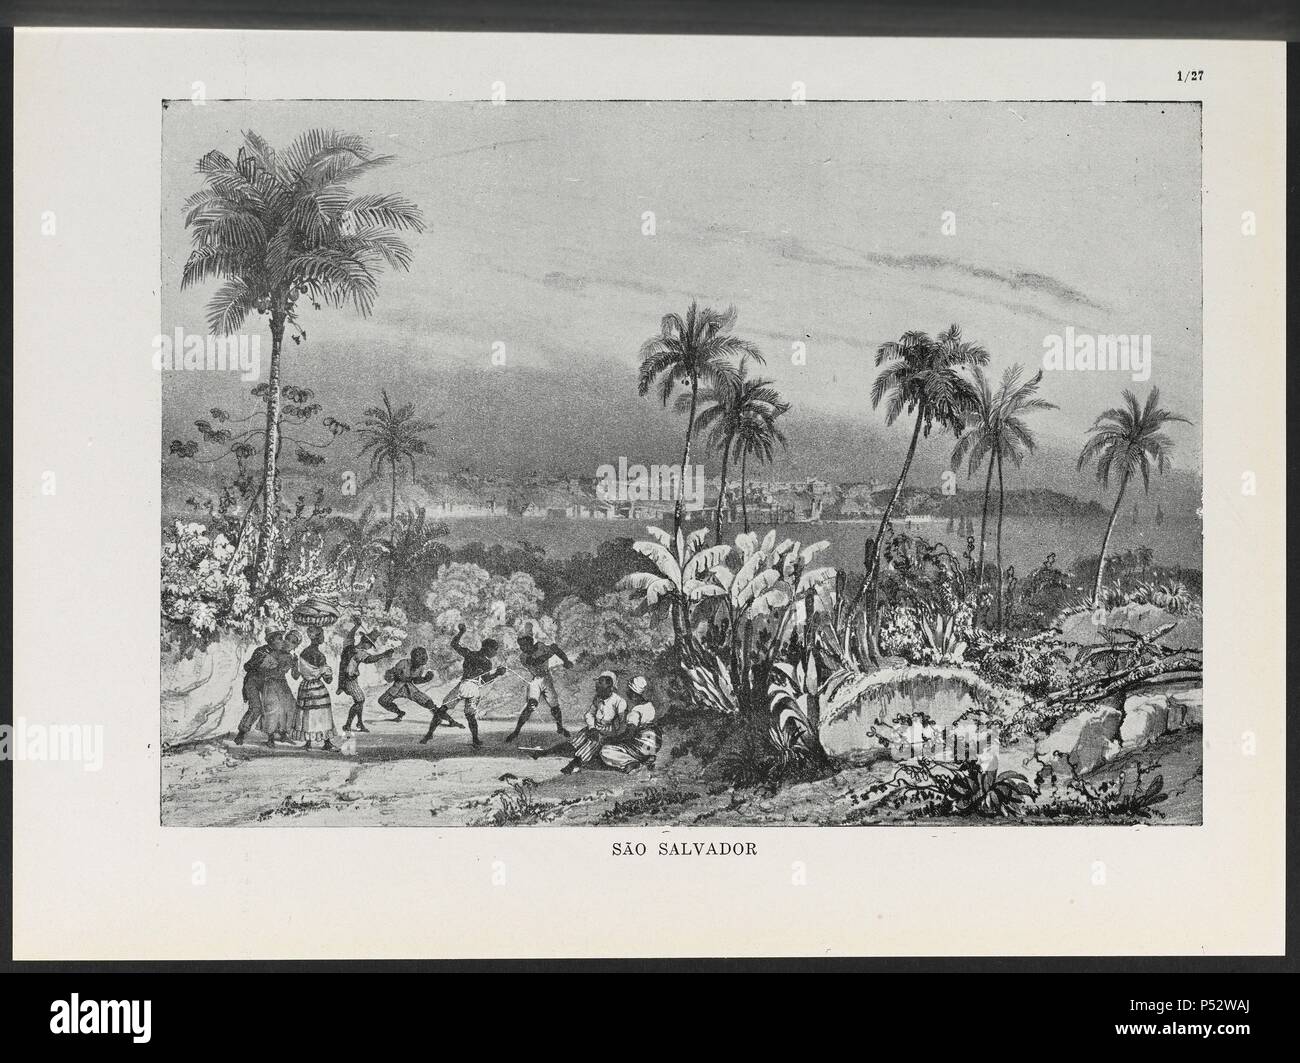 VIAGEM PINTORESCA ATRAVES DO BRASIL, SAO SALVADOR, LAMINA 27, 1835. Author: Johann Moritz Rugendas (1802-1858). Stock Photo